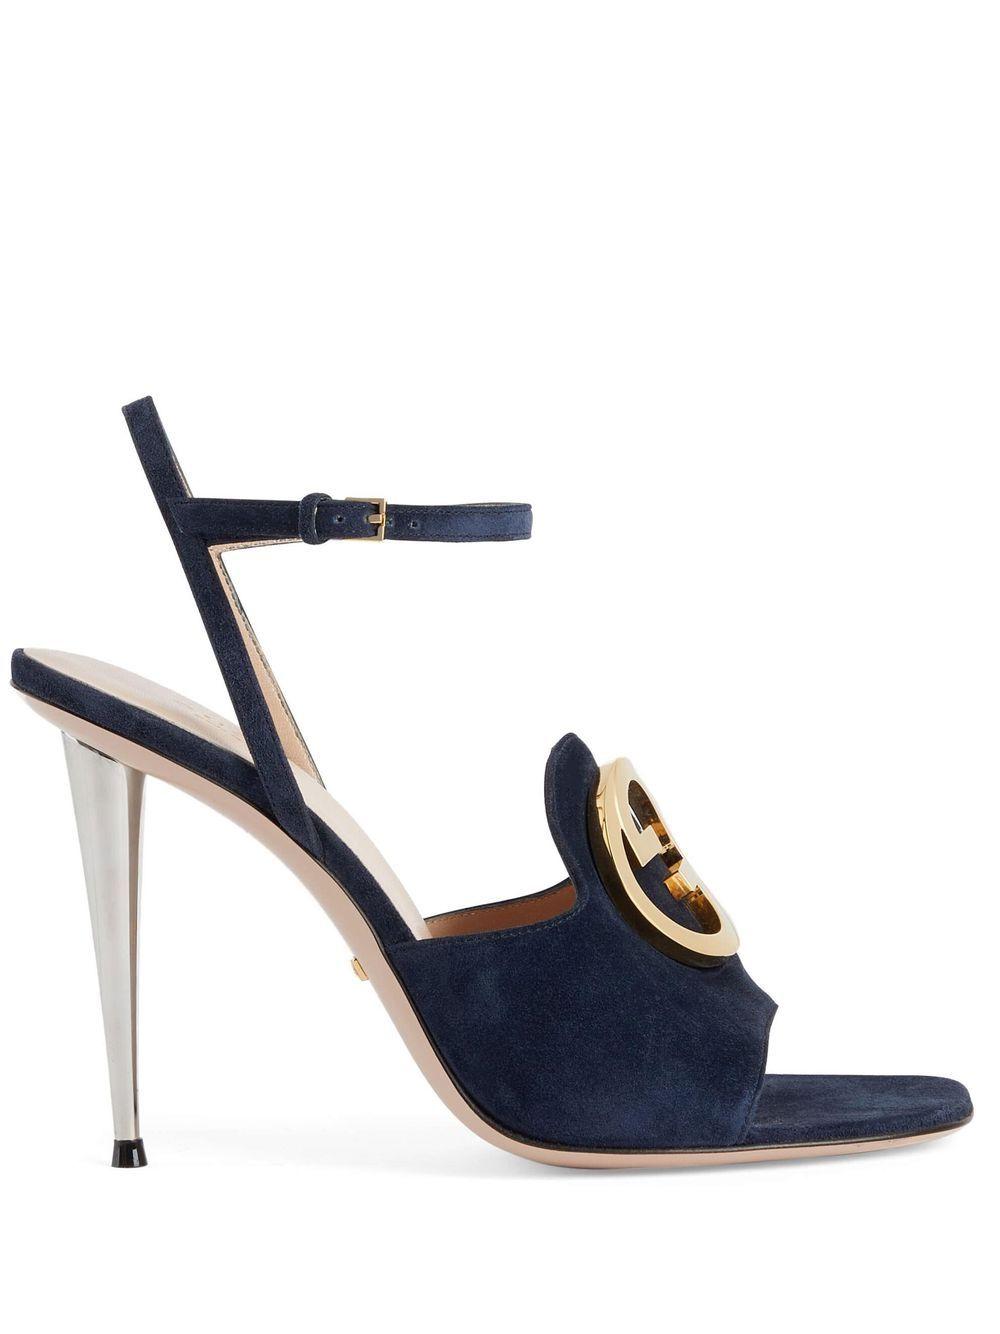 Gucci Blondie High-heel Sandals in Blue | Lyst